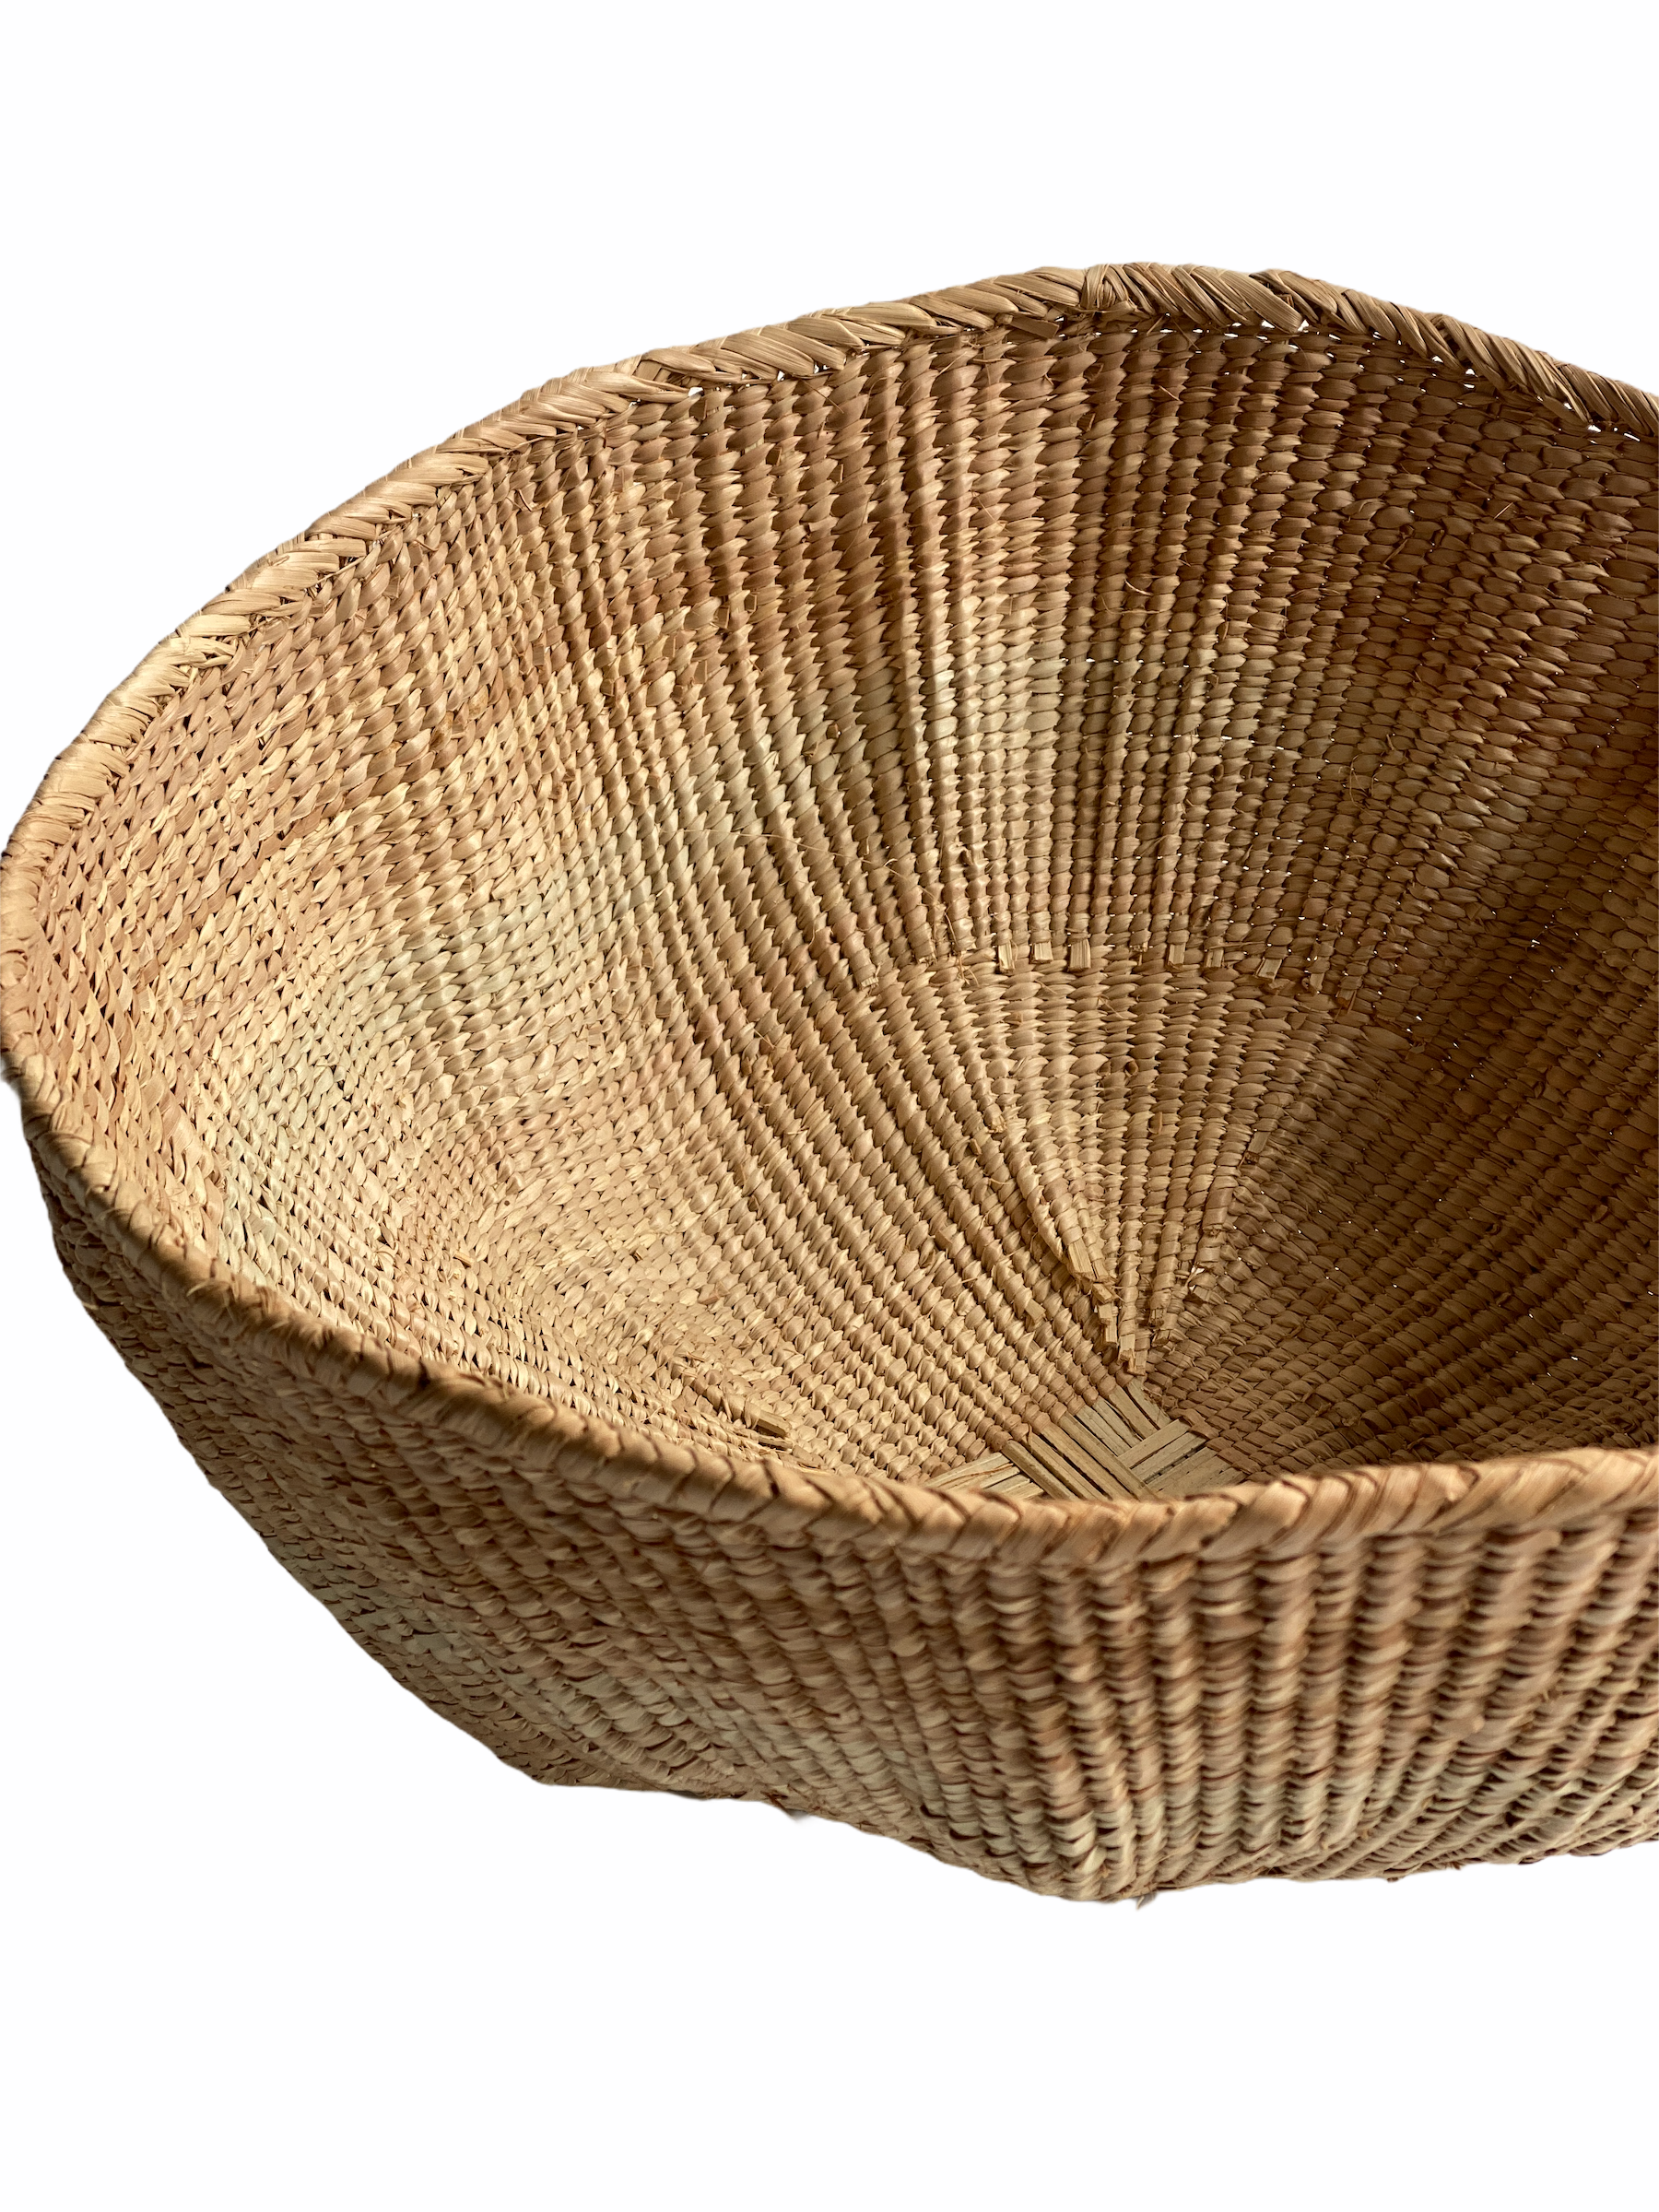 Tonga Basket Pot - 39cm